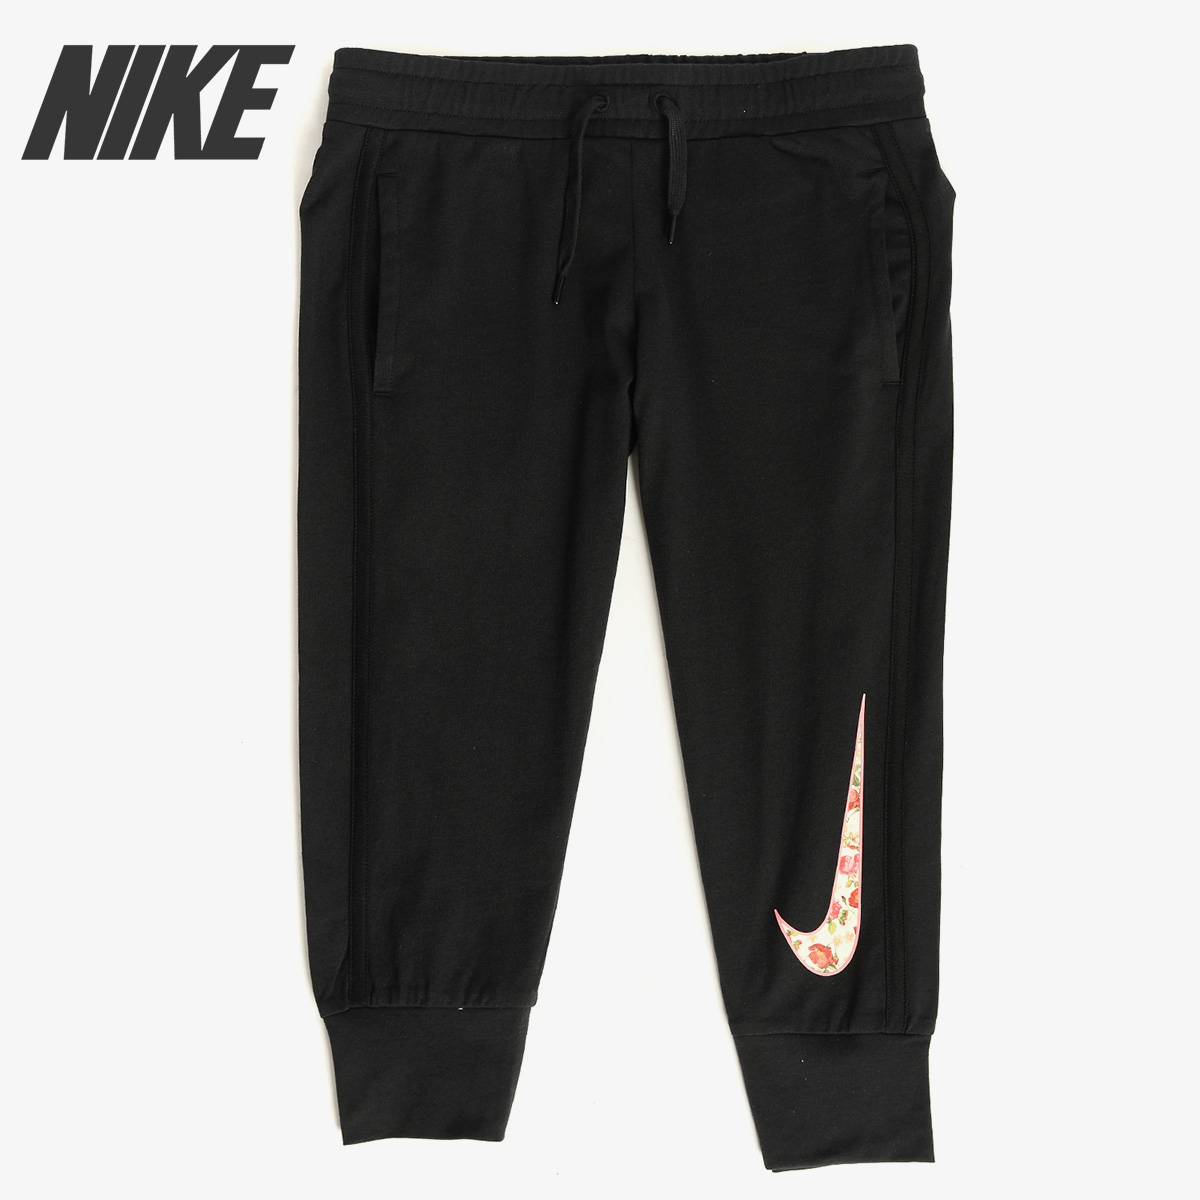 Nike/耐克正品吊牌价299儿童时尚舒适休闲运动透气裤子CK1442-010